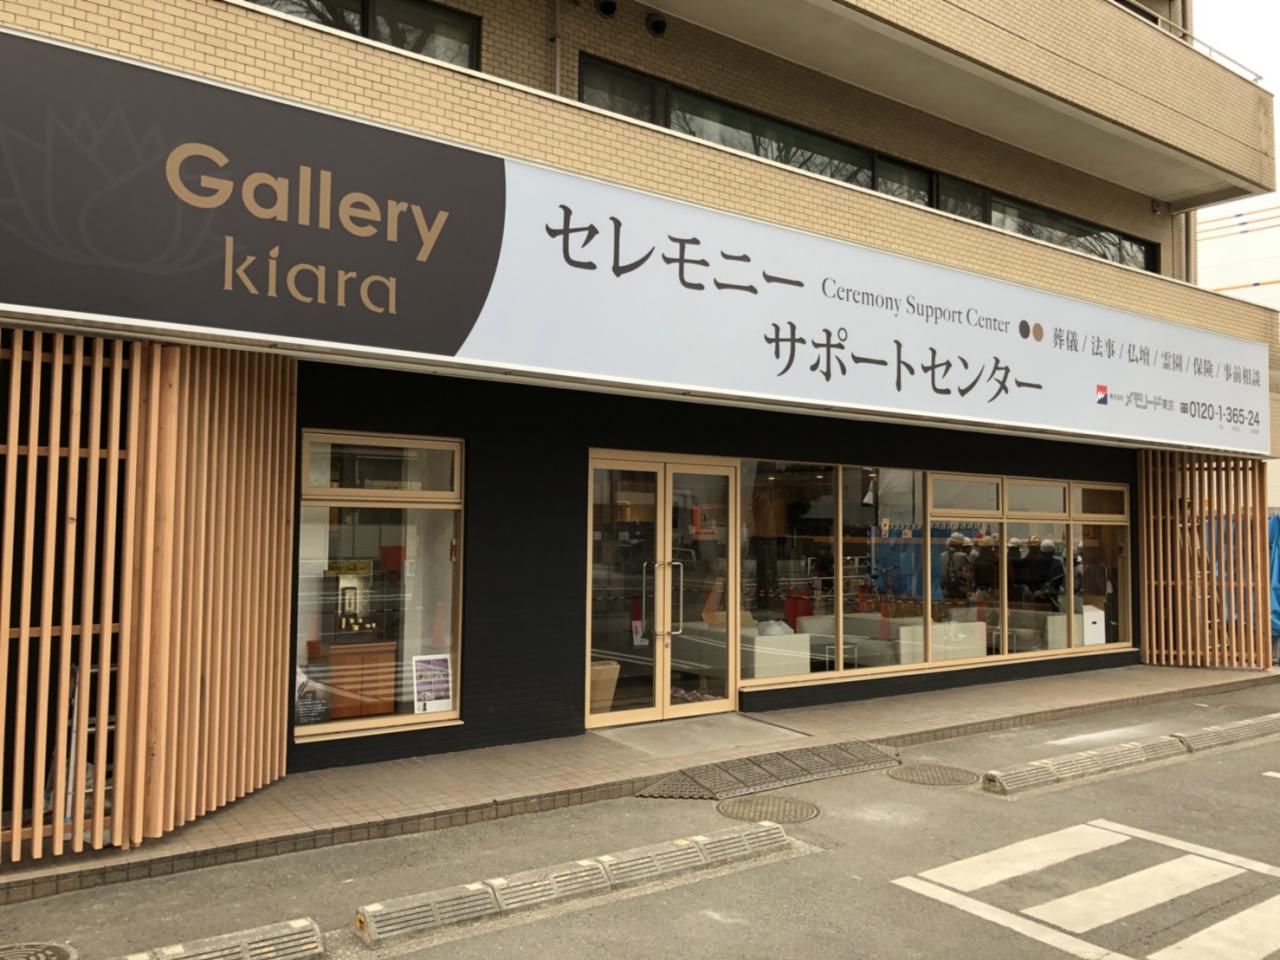 セレモニーサポートセンター柴崎店 Gallery Kiara